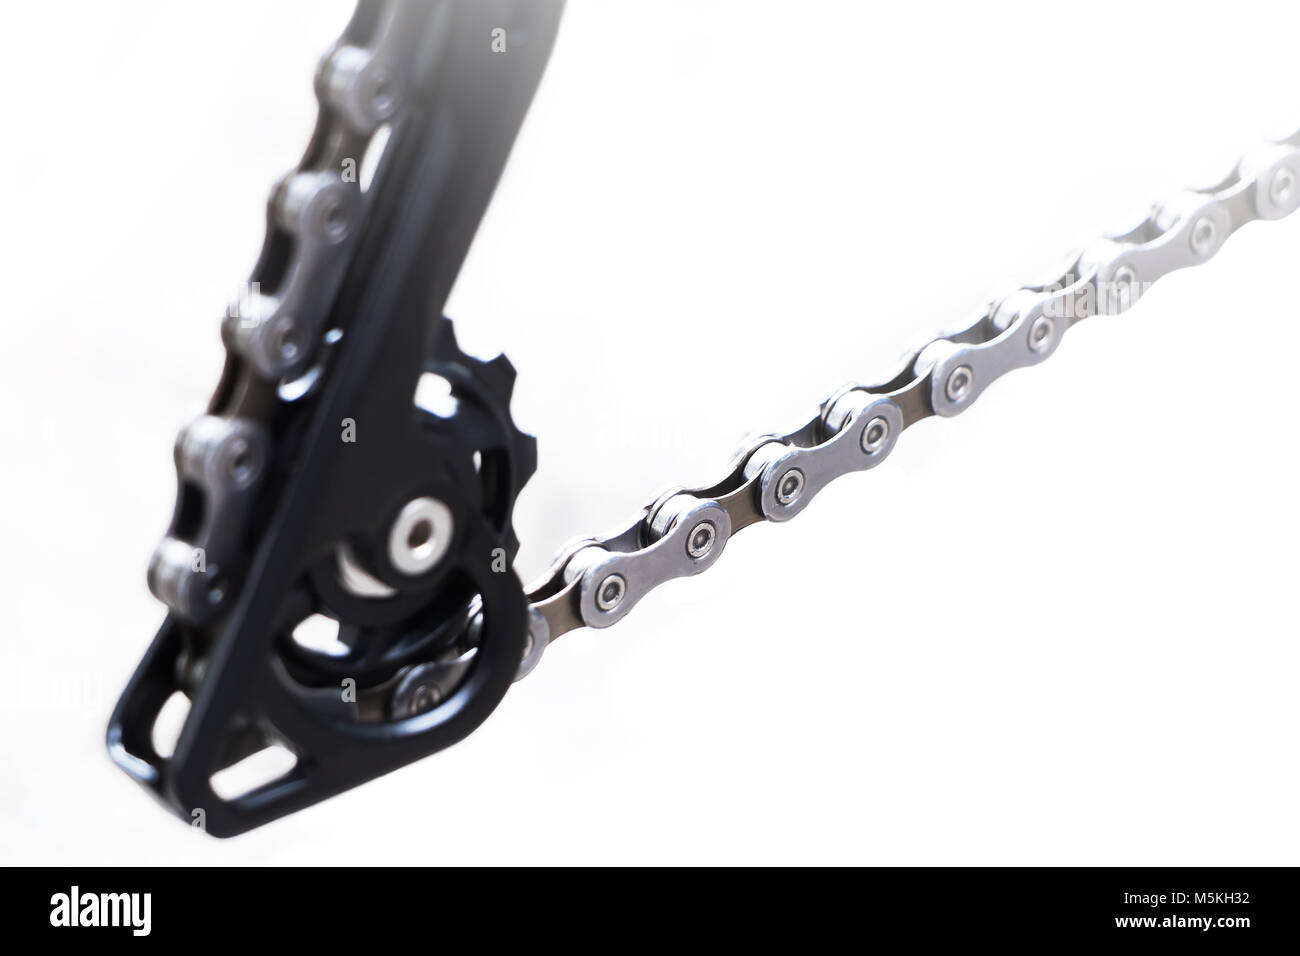 Roue et équipement de vélo avec une nouvelle chaîne propre, rayons et petite bague de chaîne du commutateur de vitesse de vélo de montagne arrière sur un fond blanc Banque D'Images